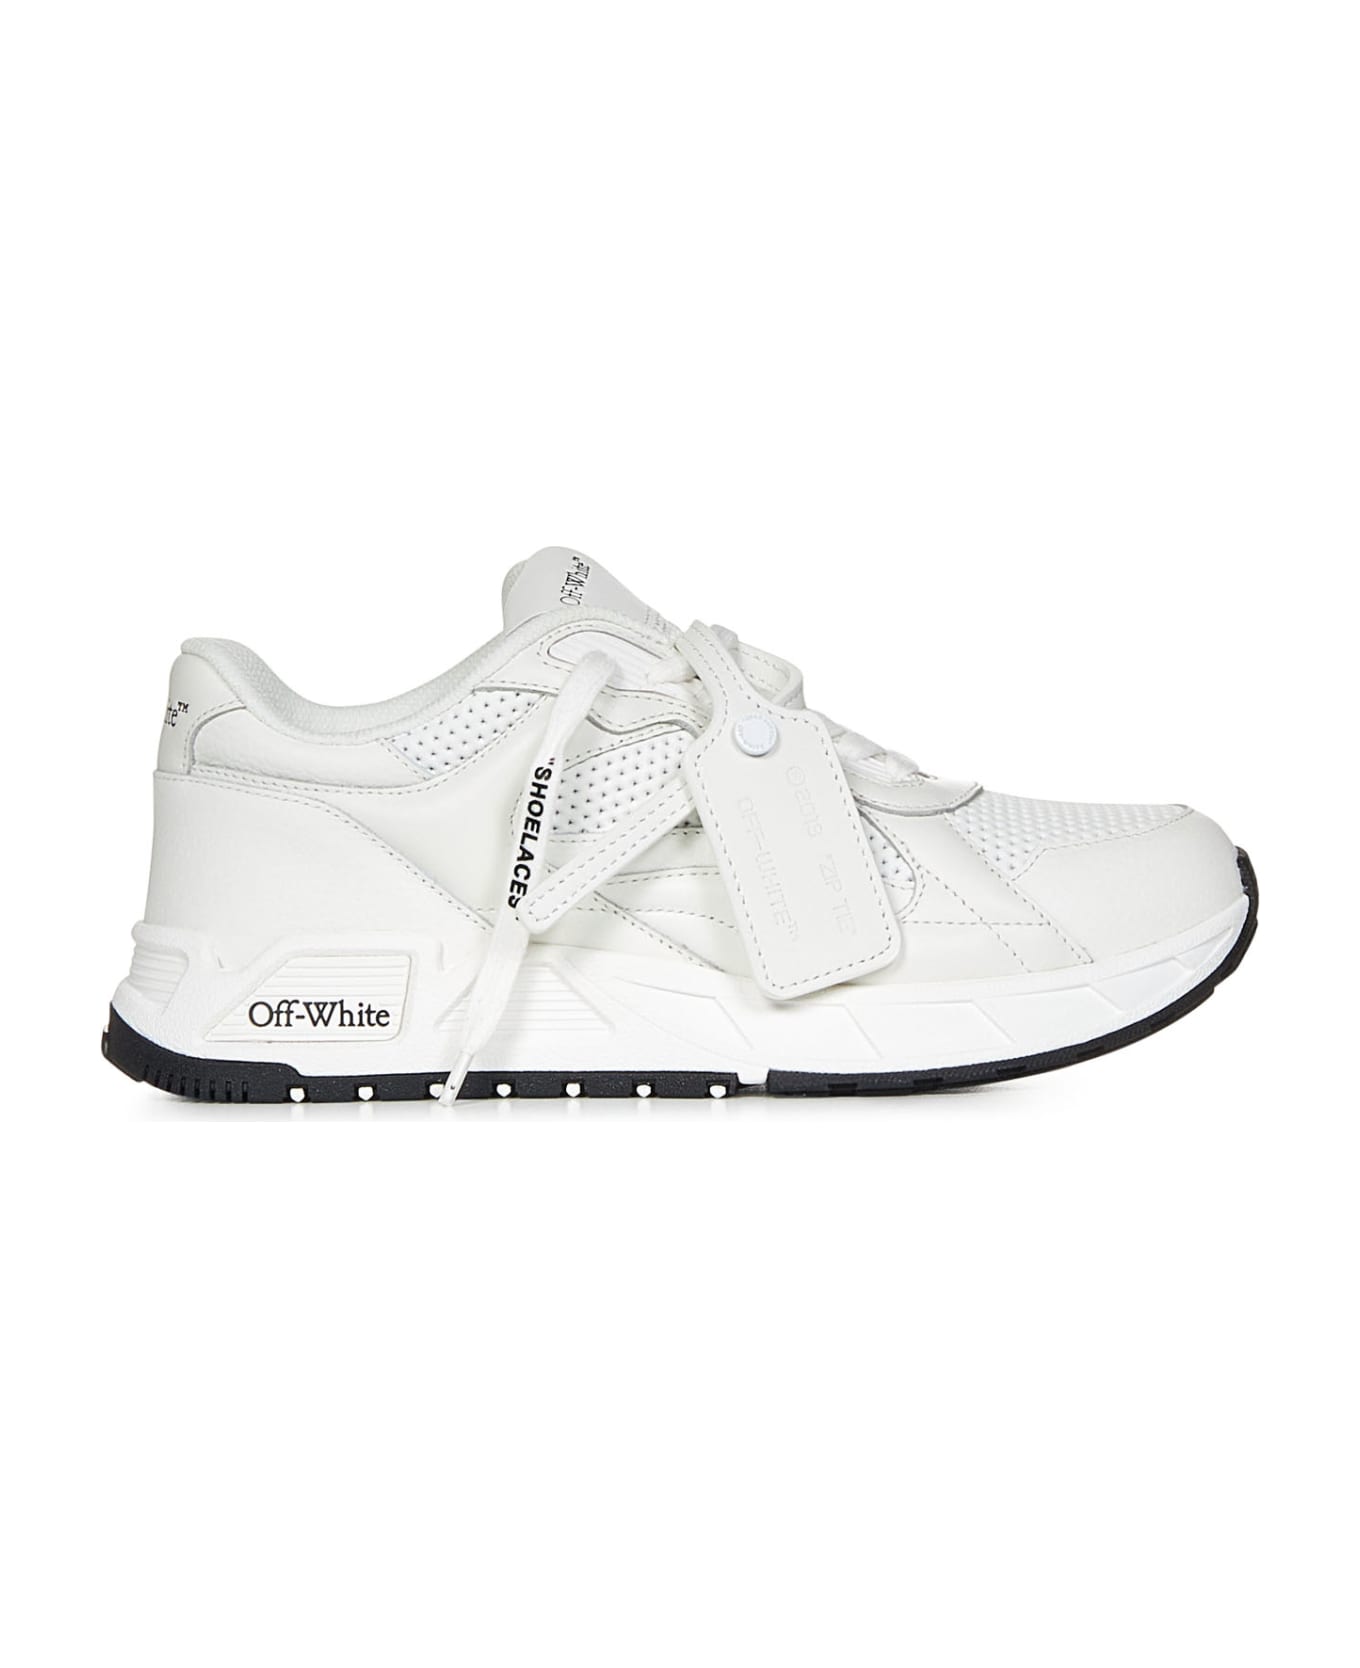 Off-White Kick Off Sneakers - White